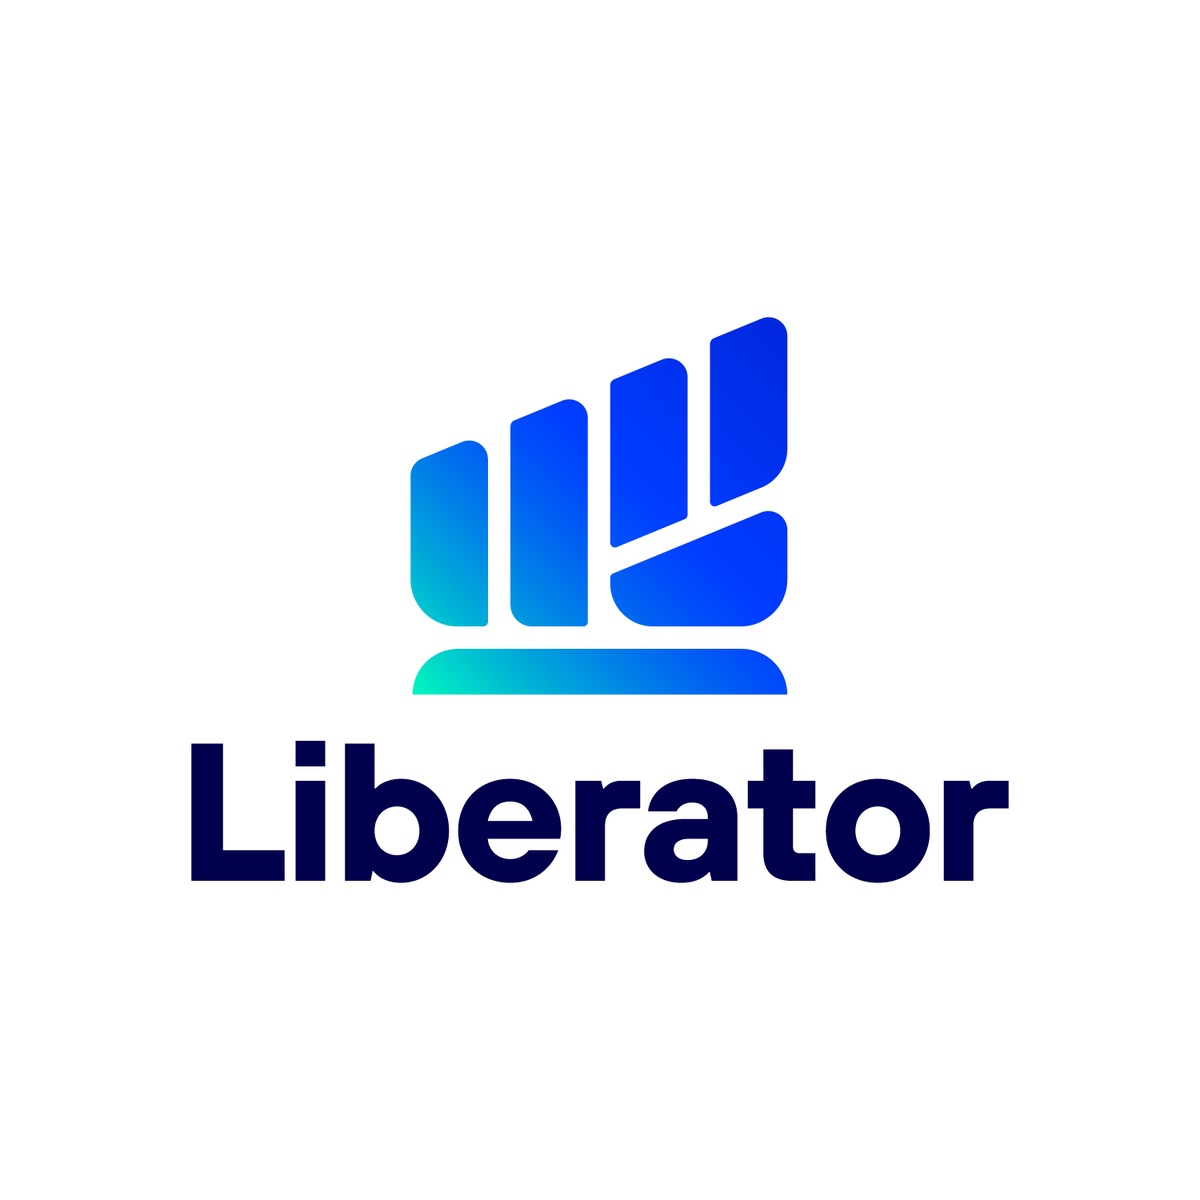 สุดฮอต!! นักลงทุนให้การตอบรับล้นหลามกับงานสัมมนา Liberator 'จับทิศทางตลาดหุ้นไทย เลือกตั้งใหญ่'66' พร้อมเสิร์ฟกิจกรรมดีๆ ต่อเนื่องตลอดปี